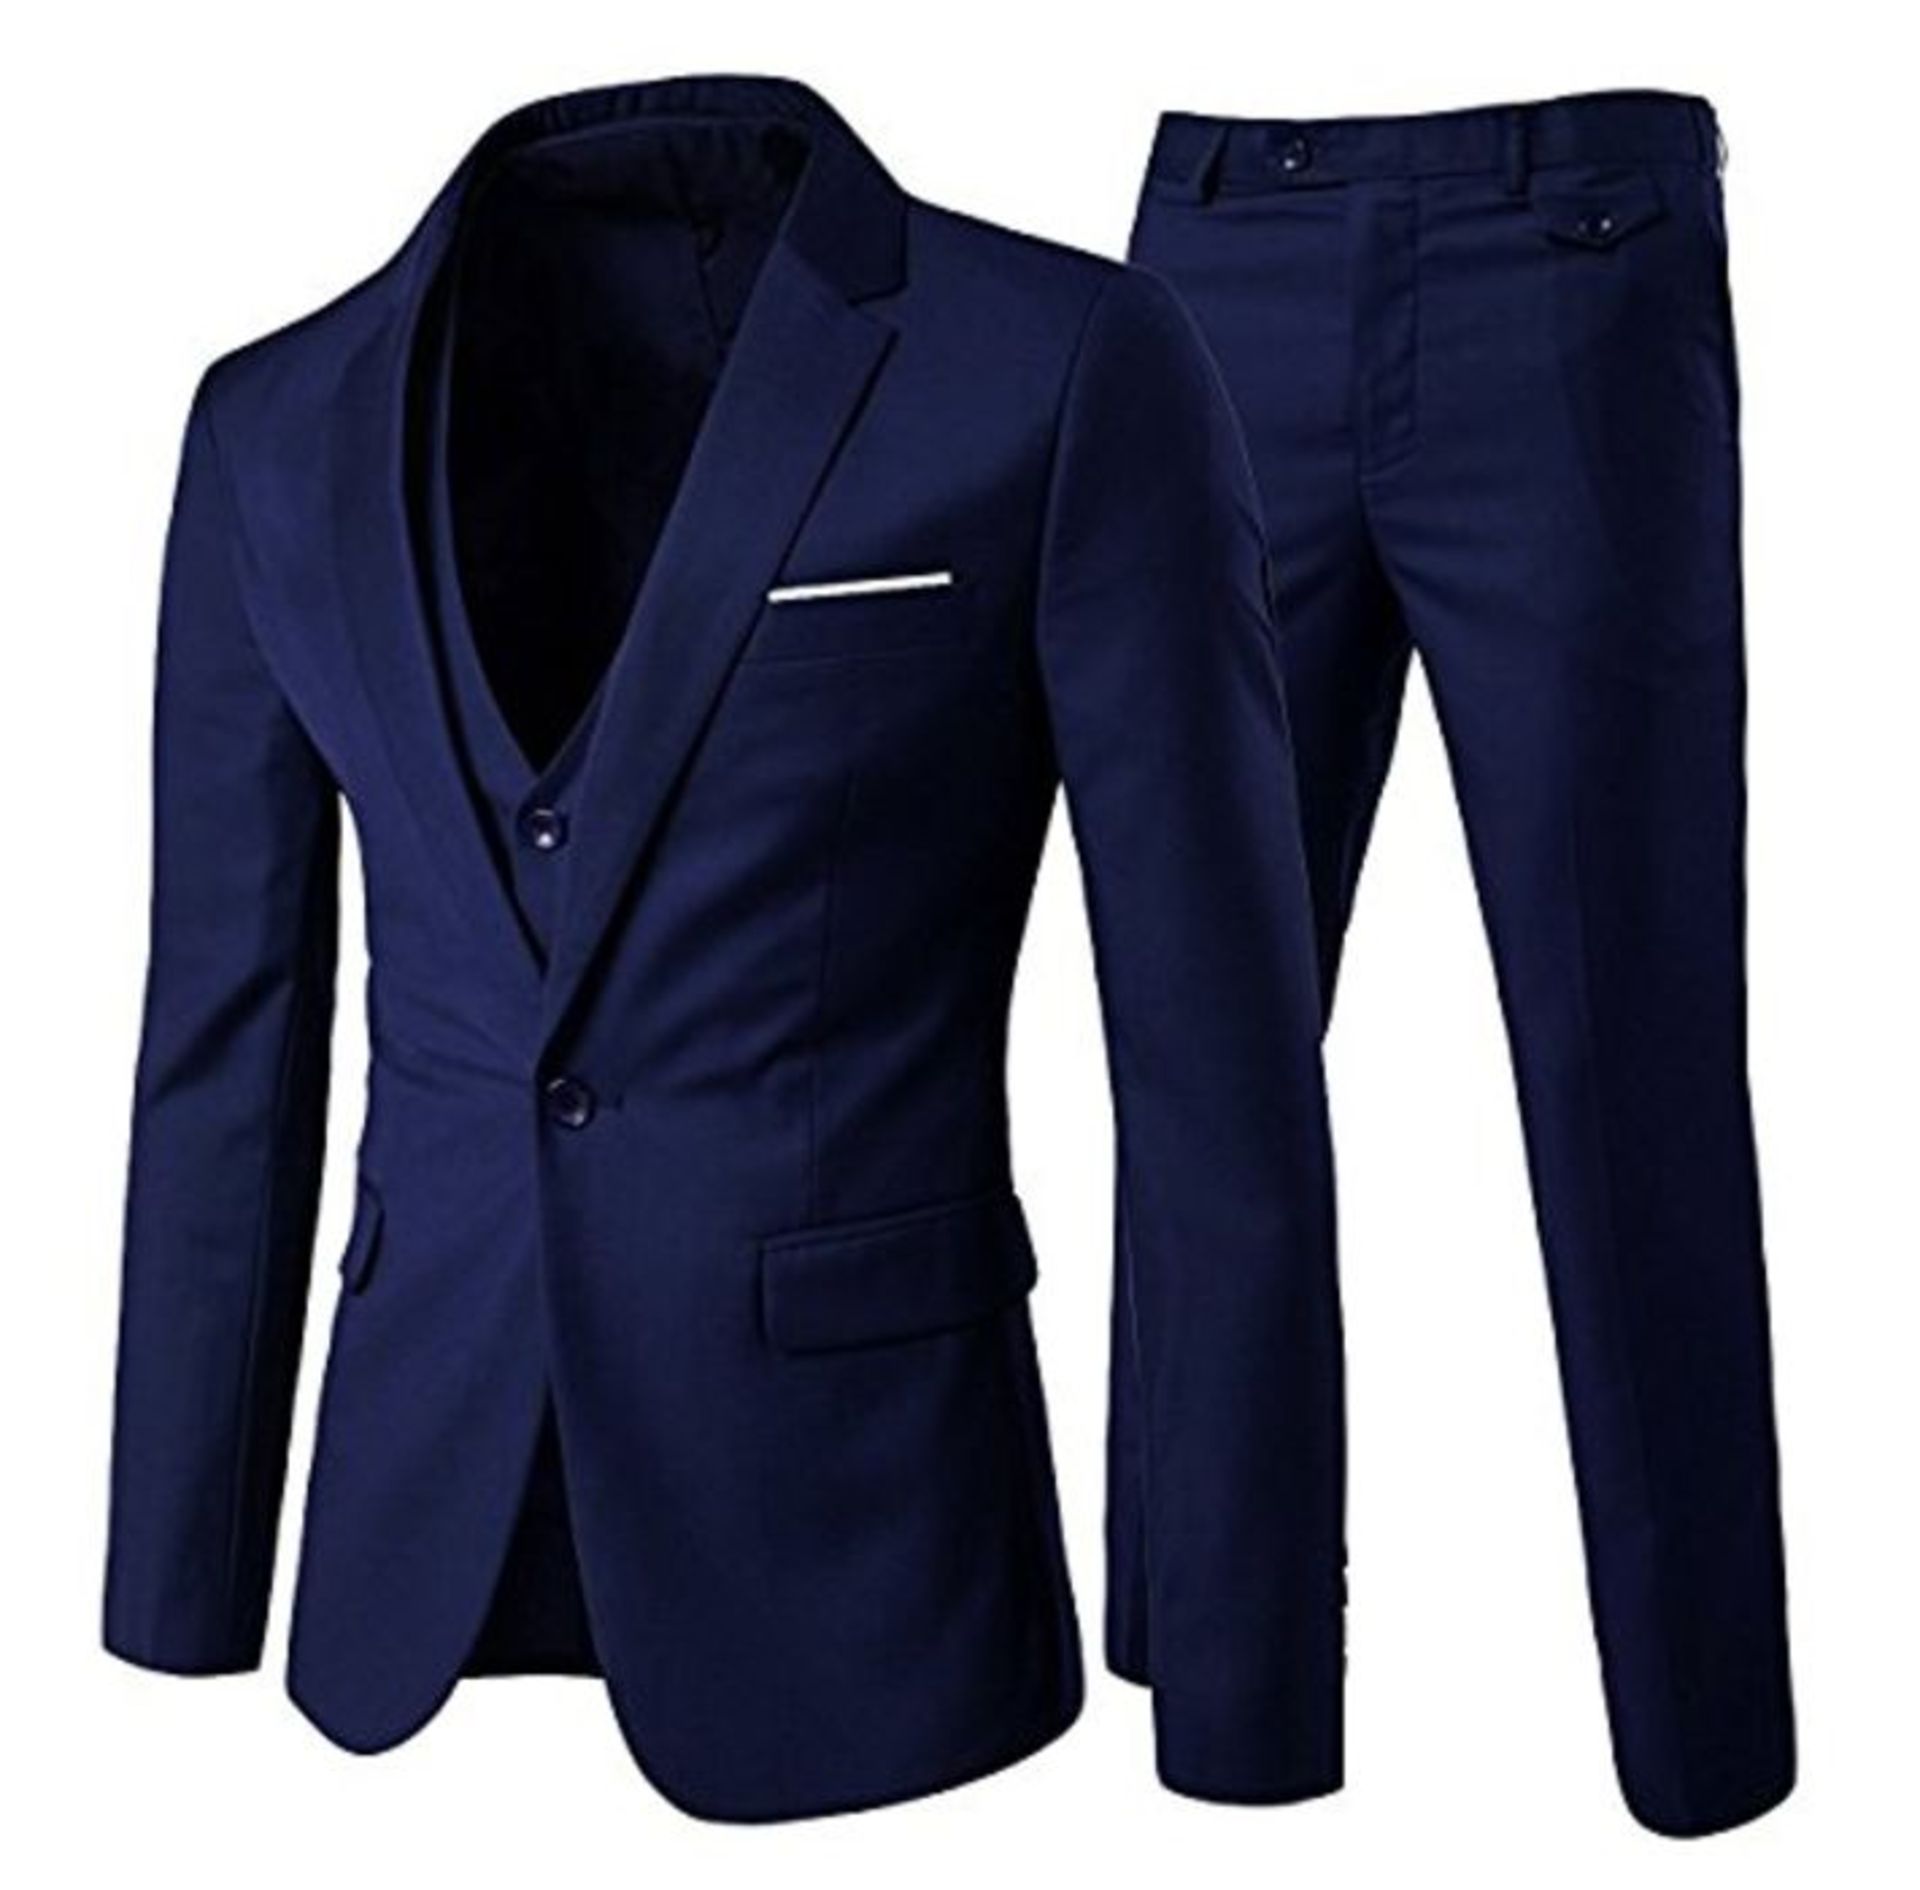 RRP £73.00 Suit men's slim fit 3 piece suits men's suit jacket for wedding business navy blue S